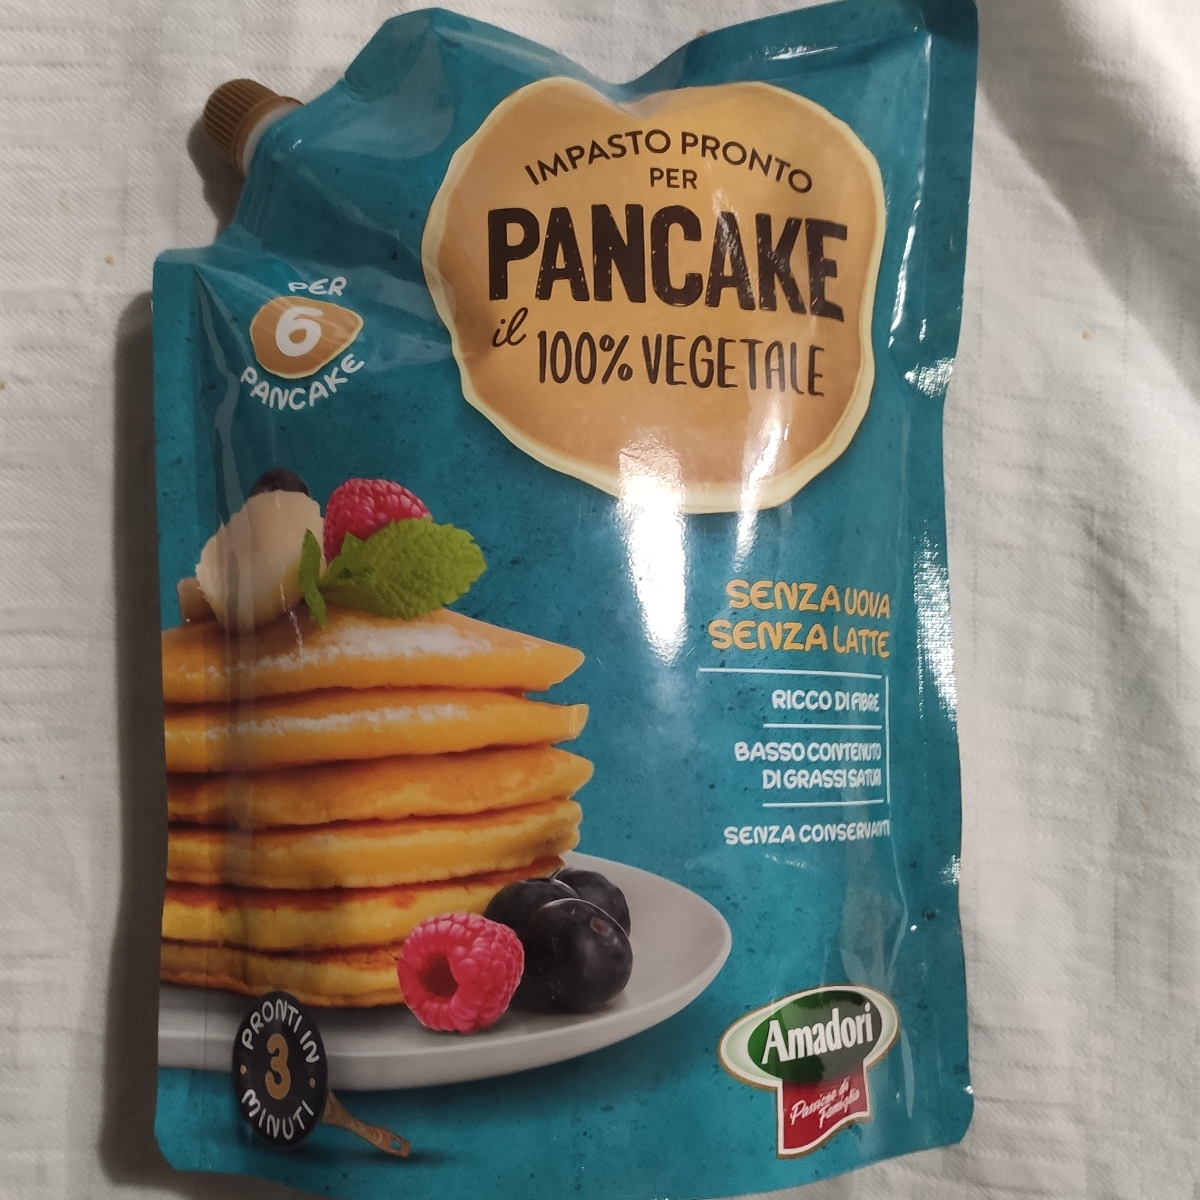 Amadori Impasto pronto per pancake Review | abillion